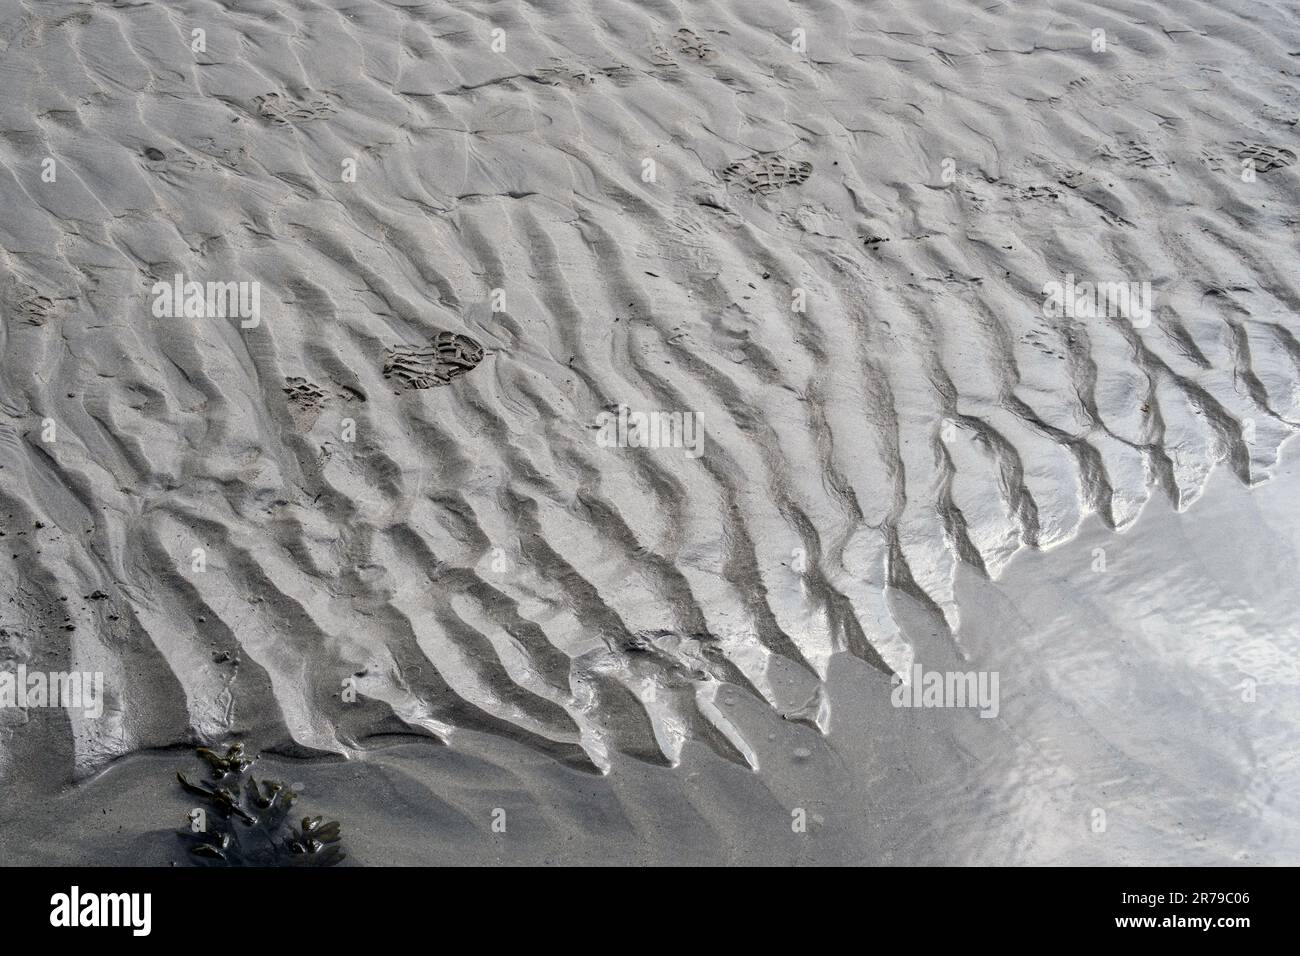 Détail des empreintes de pas dans le sable avec des motifs et des algues au bord de l’eau. Marazion Beach, Cornouailles, Angleterre, Royaume-Uni. Banque D'Images